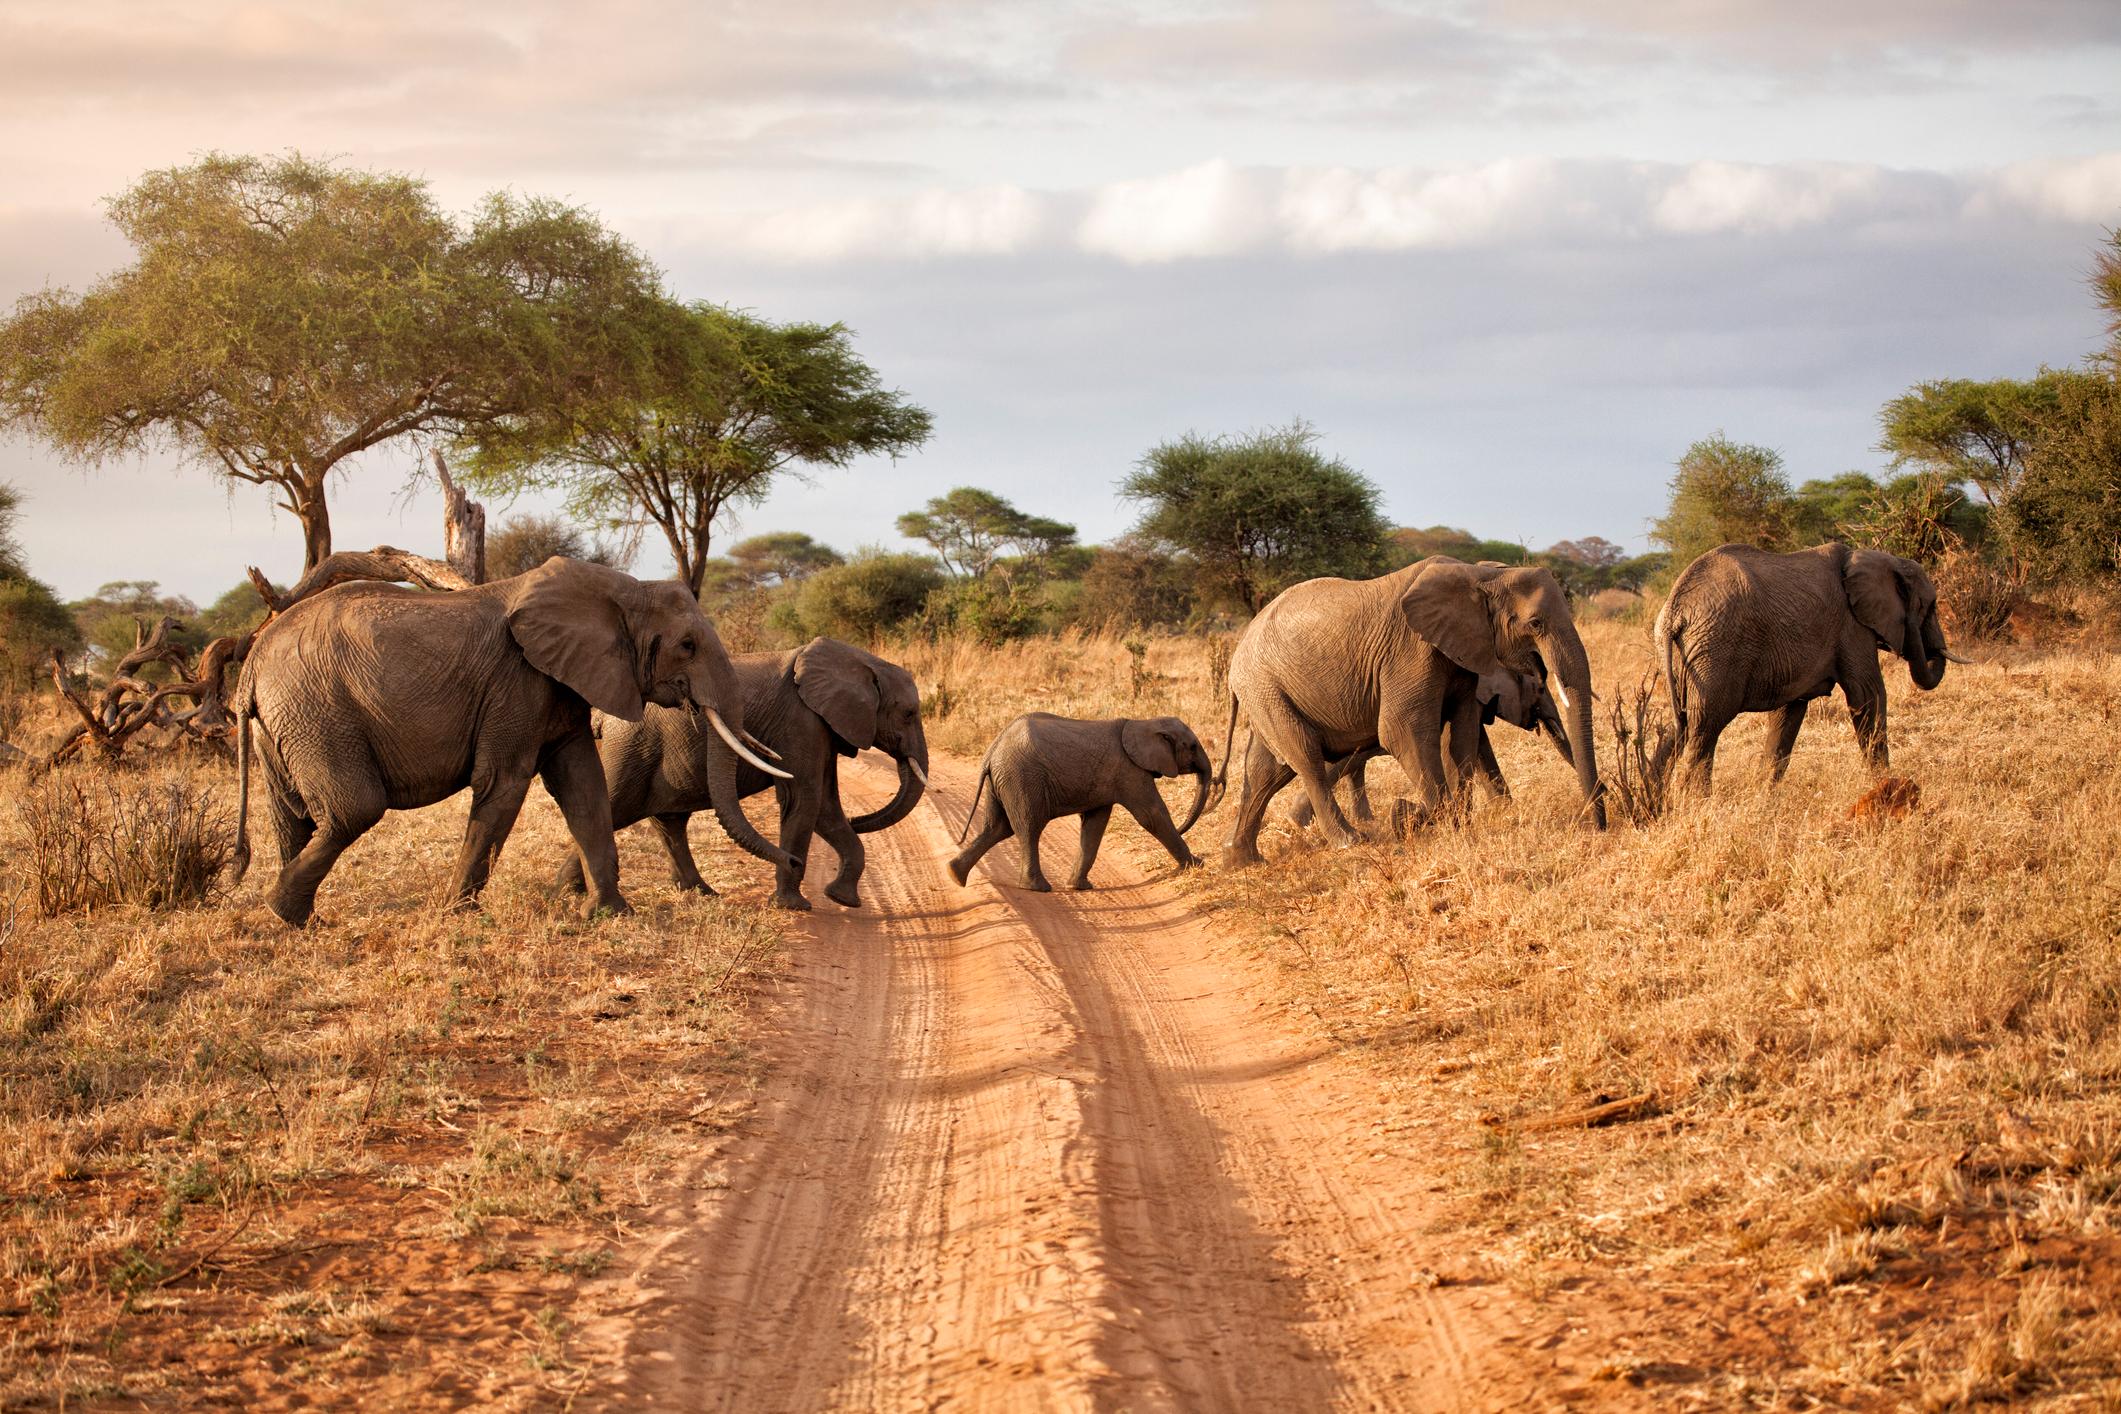 Elephants crossing the road in Tarangire National Park, Tanzania